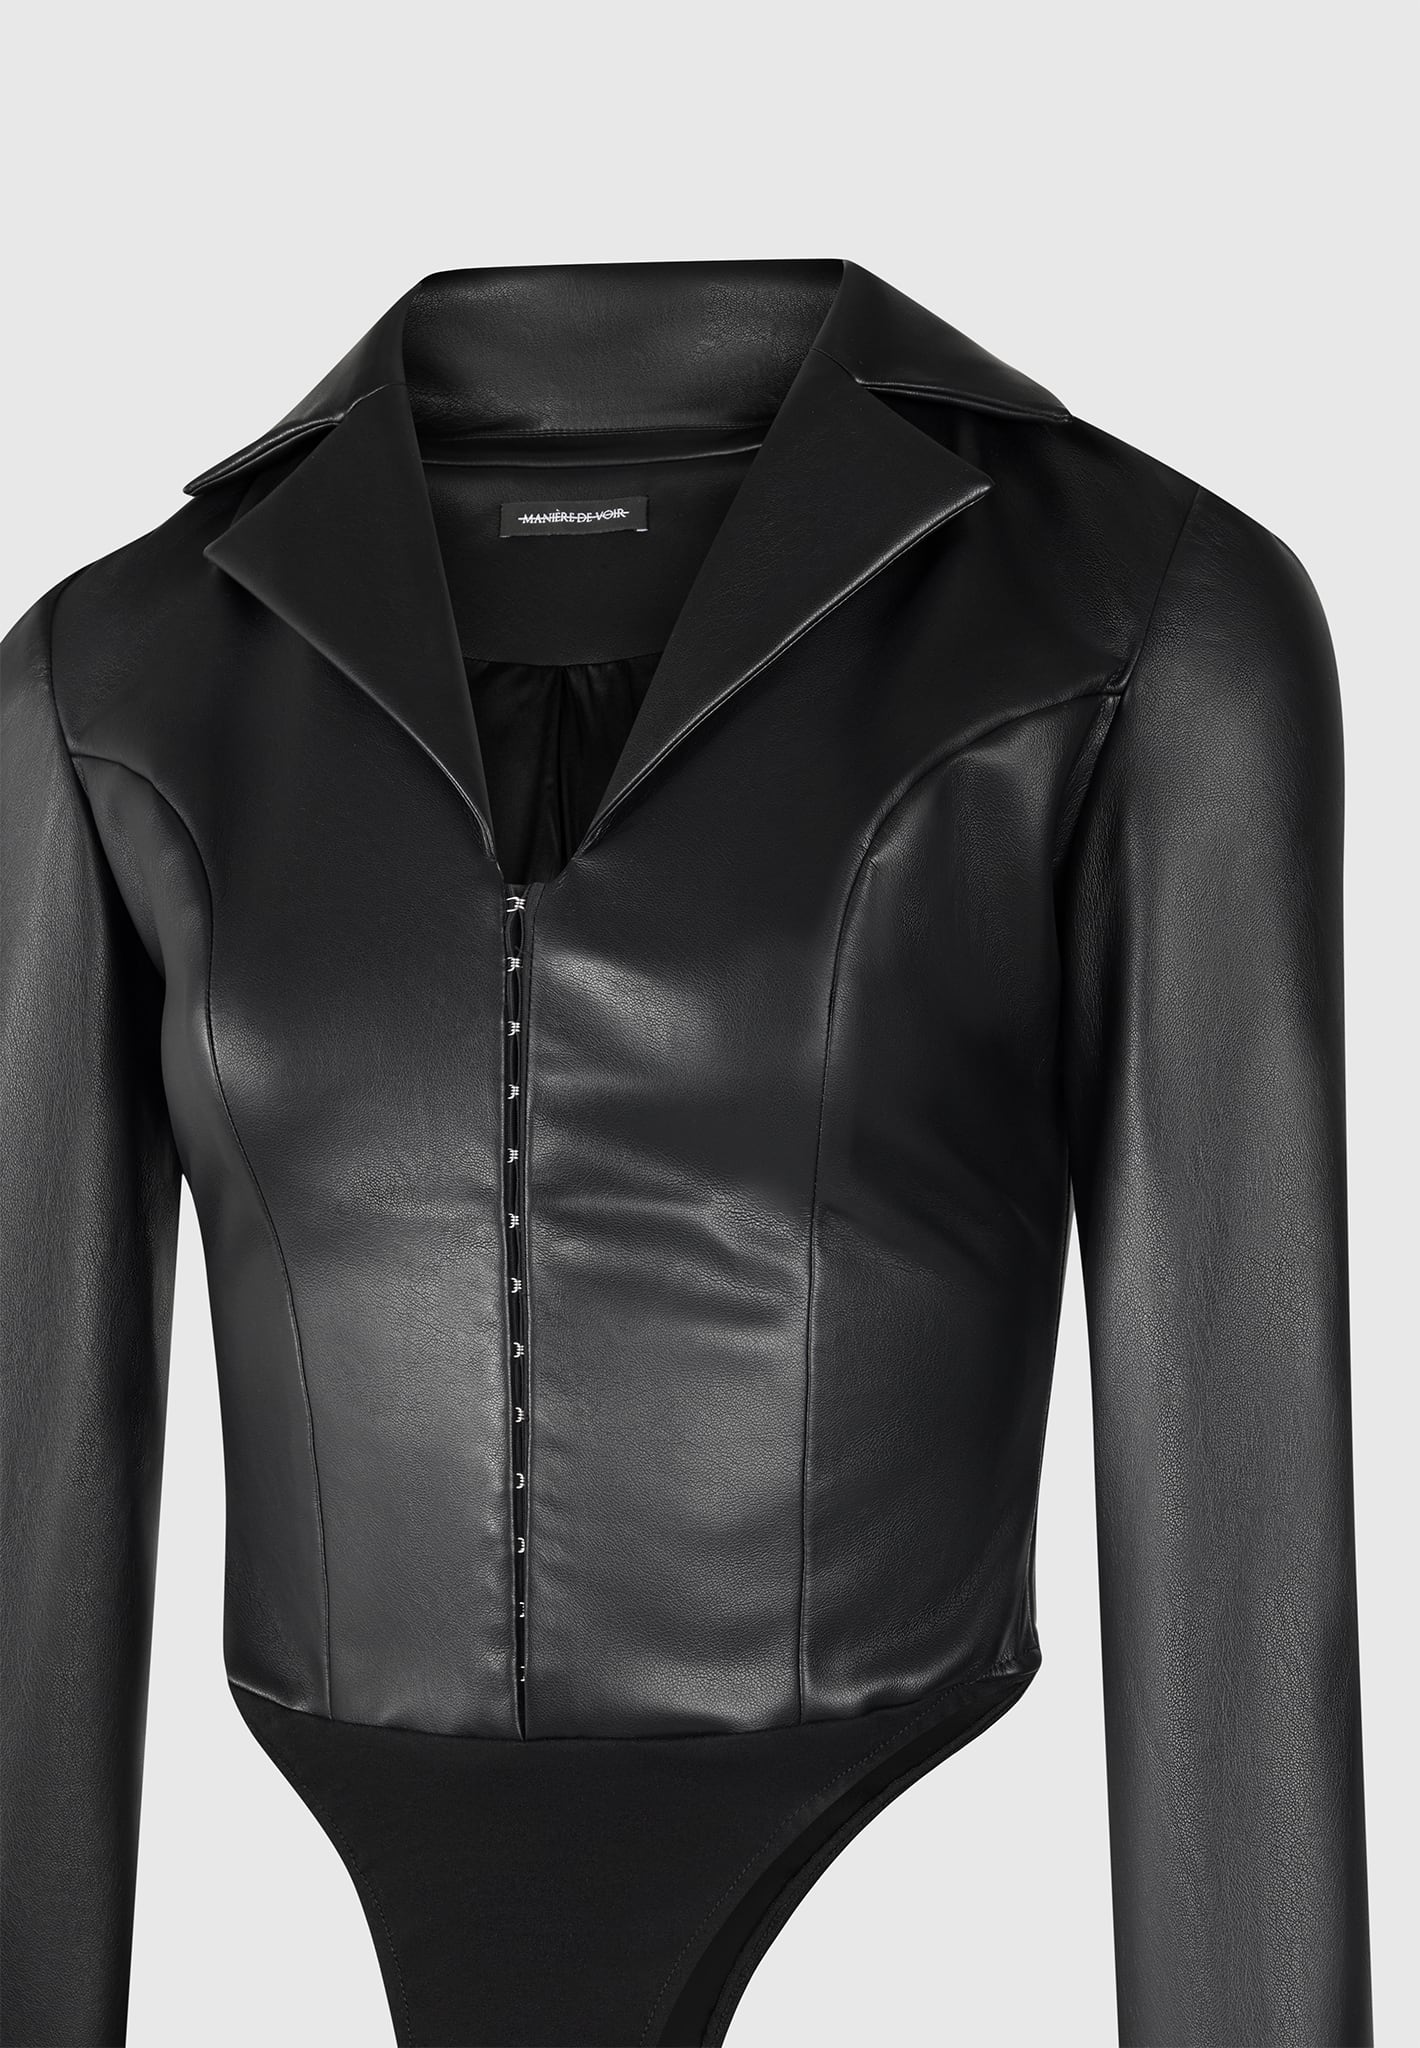 vegan-leather-blazer-bodysuit-black-1